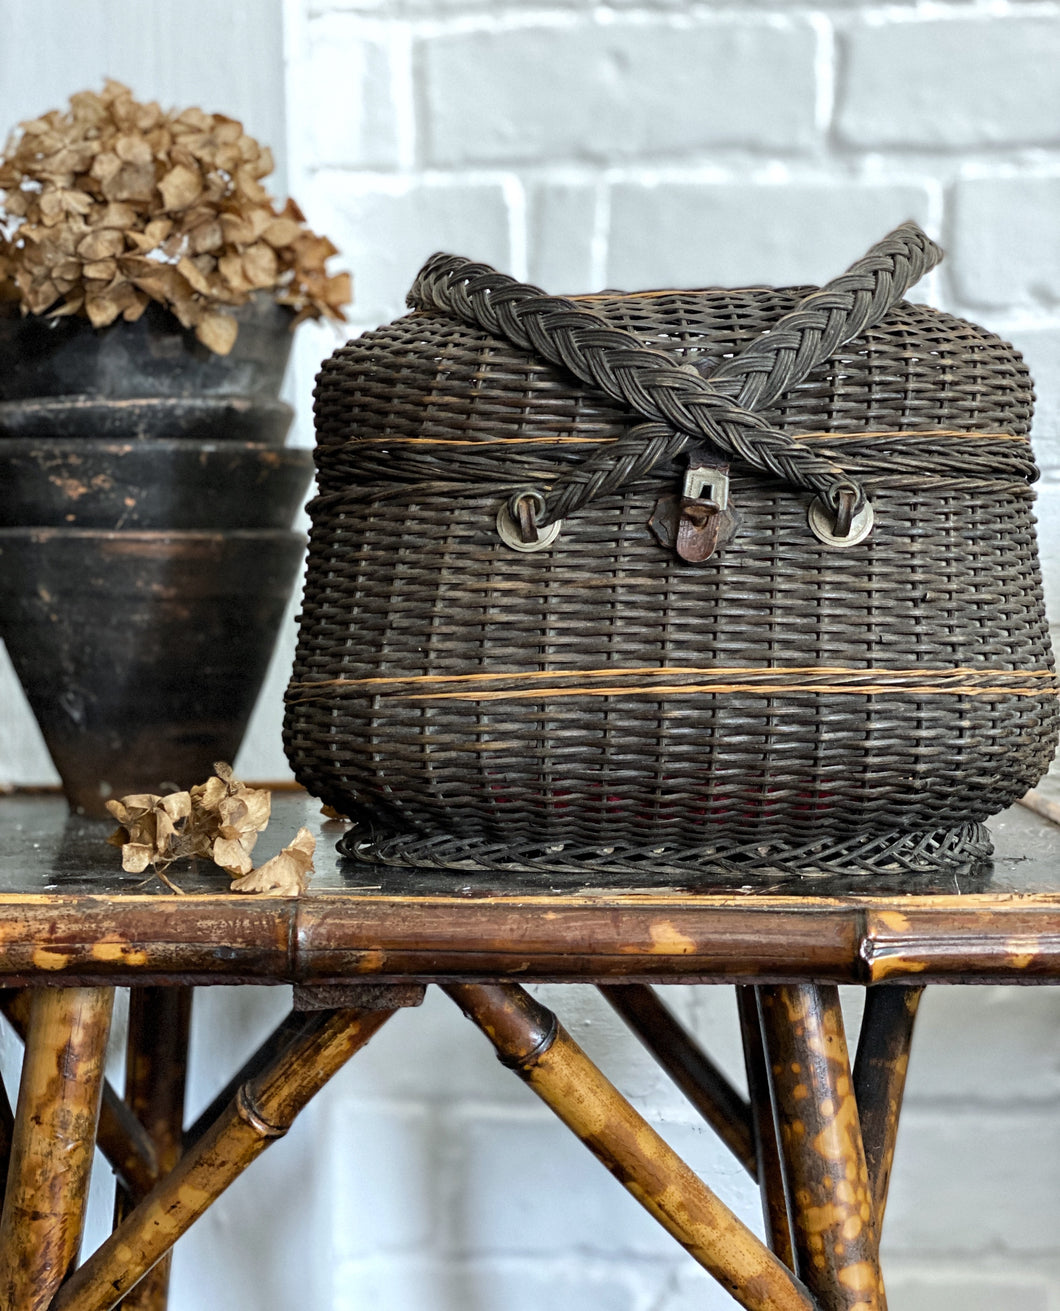 A Decorative French antique wicker bird market basket